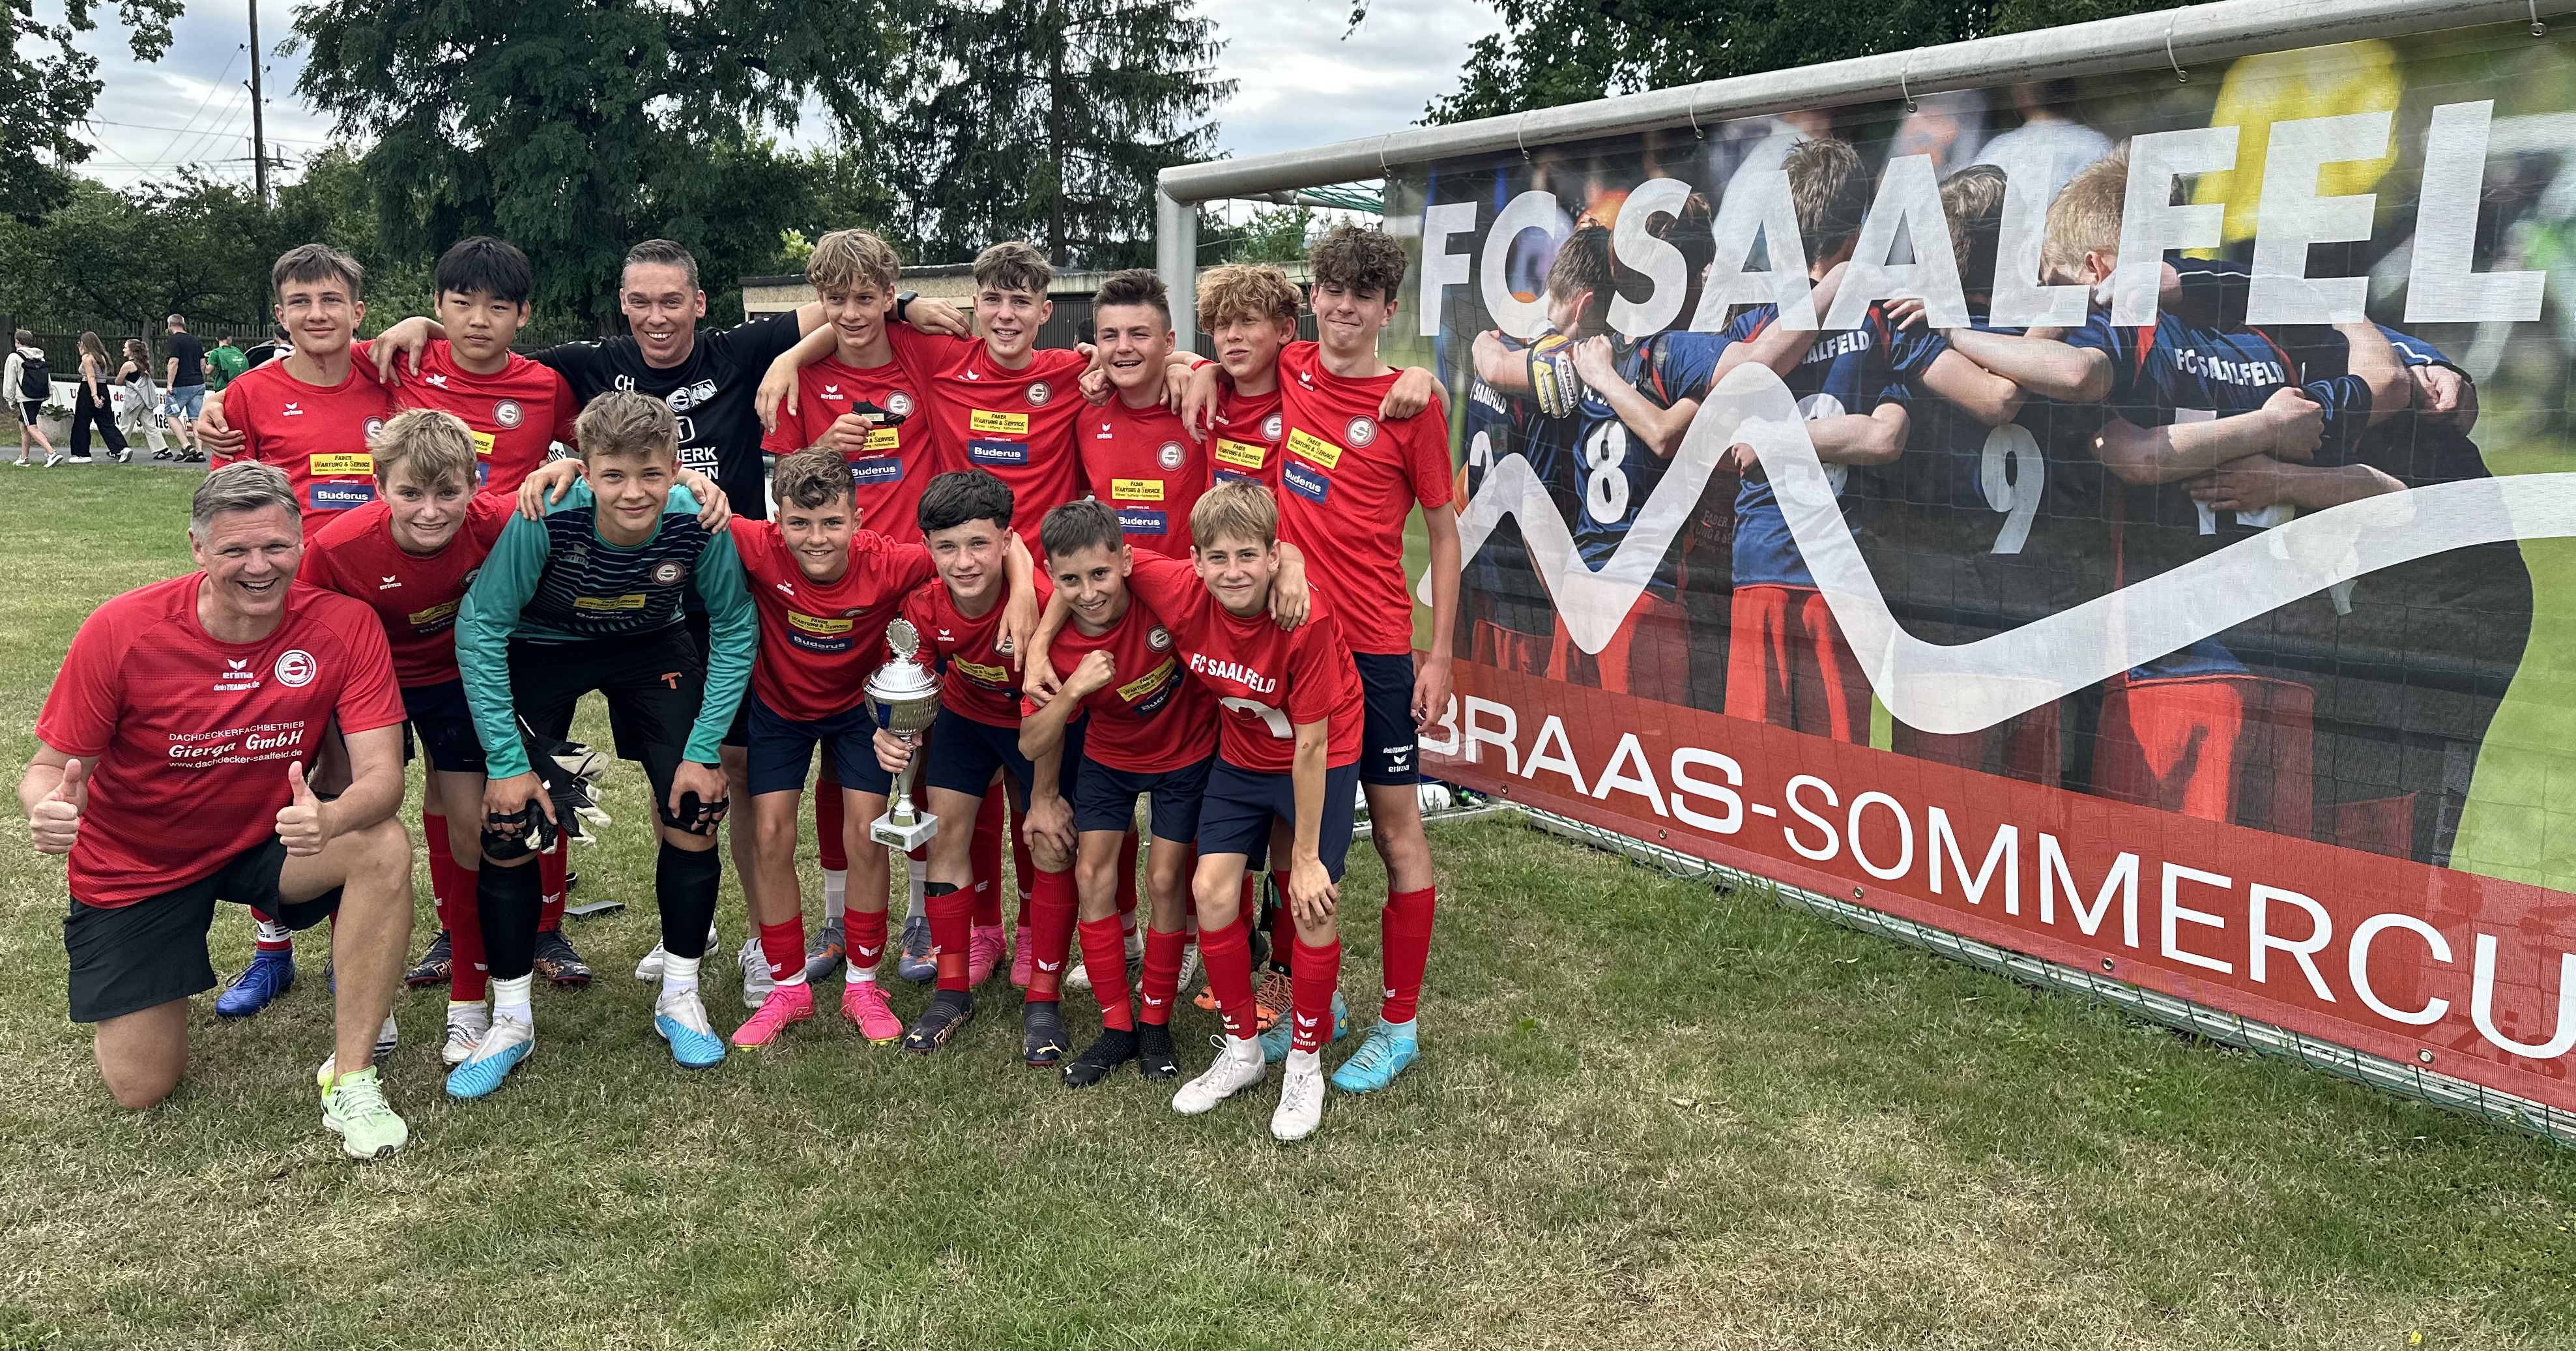 Unsere U14 gewinnt den "4. Braas-Sommer-Cup" 2023